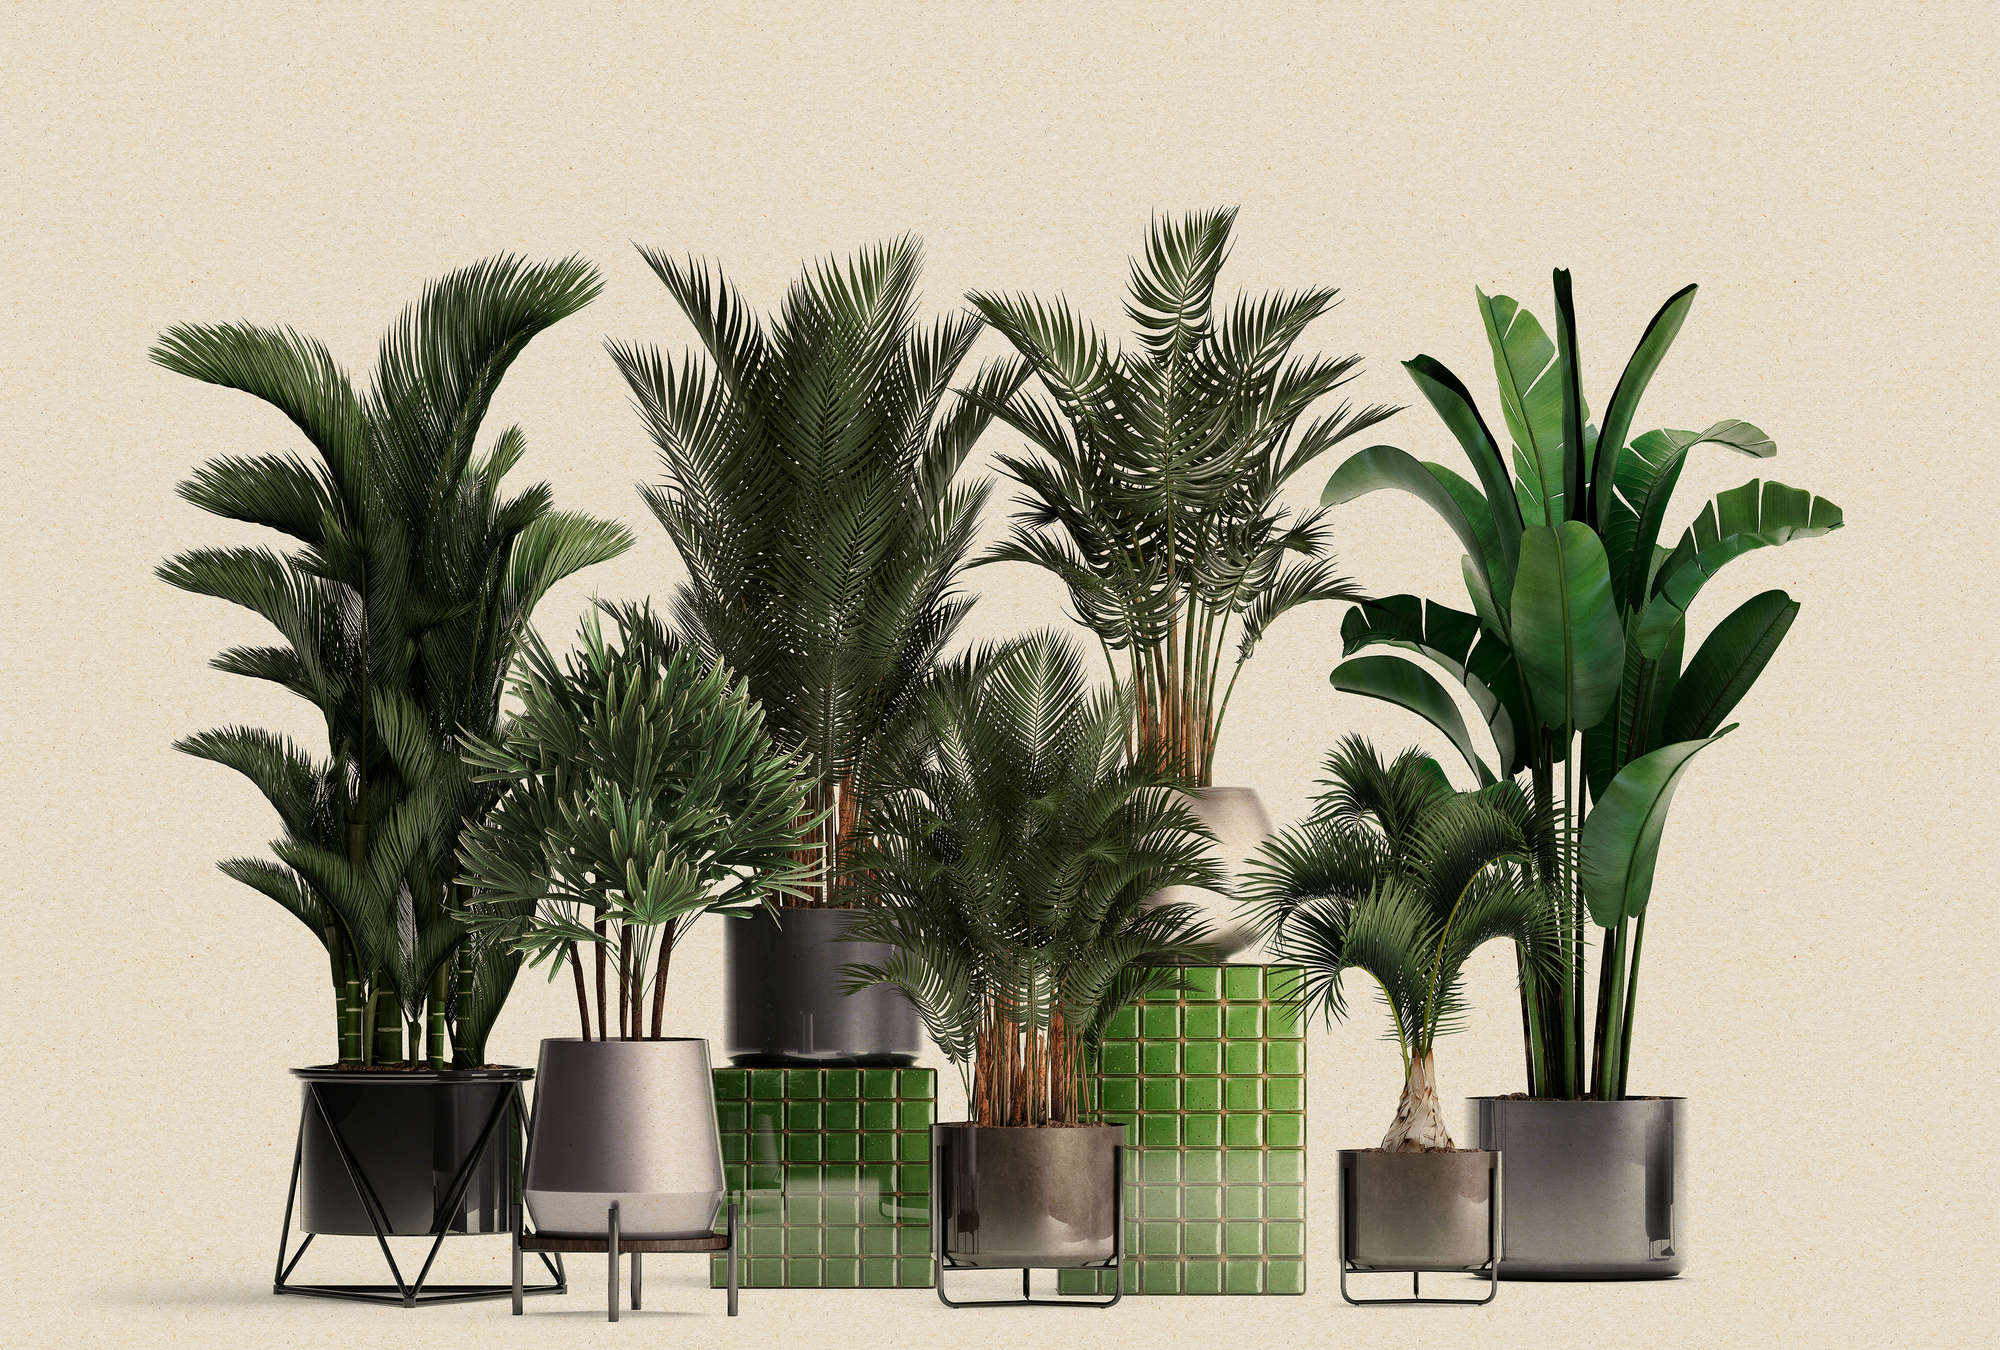             Plant Shop 1 - Nature Photopapier peint Plantes en pot Palmiers
        